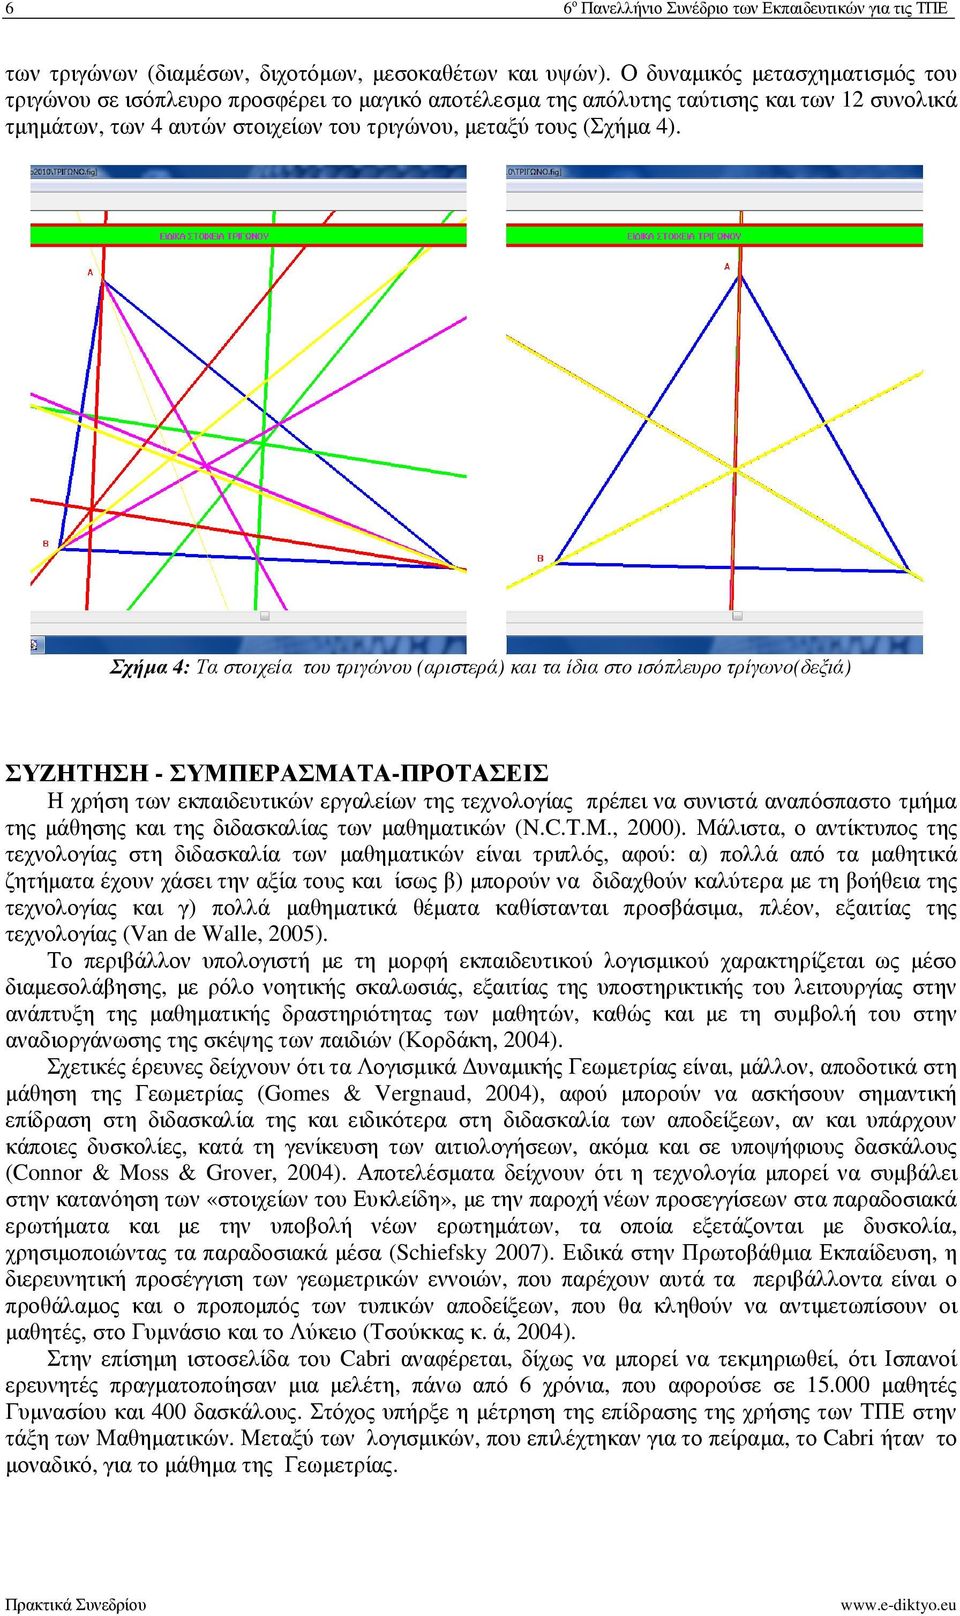 Σχήµα 4: Τα στοιχεία του τριγώνου (αριστερά) και τα ίδια στο ισόπλευρο τρίγωνο(δεξιά) ΣΥΖΗΤΗΣΗ - ΣΥΜΠΕΡΑΣΜΑΤΑ-ΠΡΟΤΑΣΕΙΣ Η χρήση των εκπαιδευτικών εργαλείων της τεχνολογίας πρέπει να συνιστά